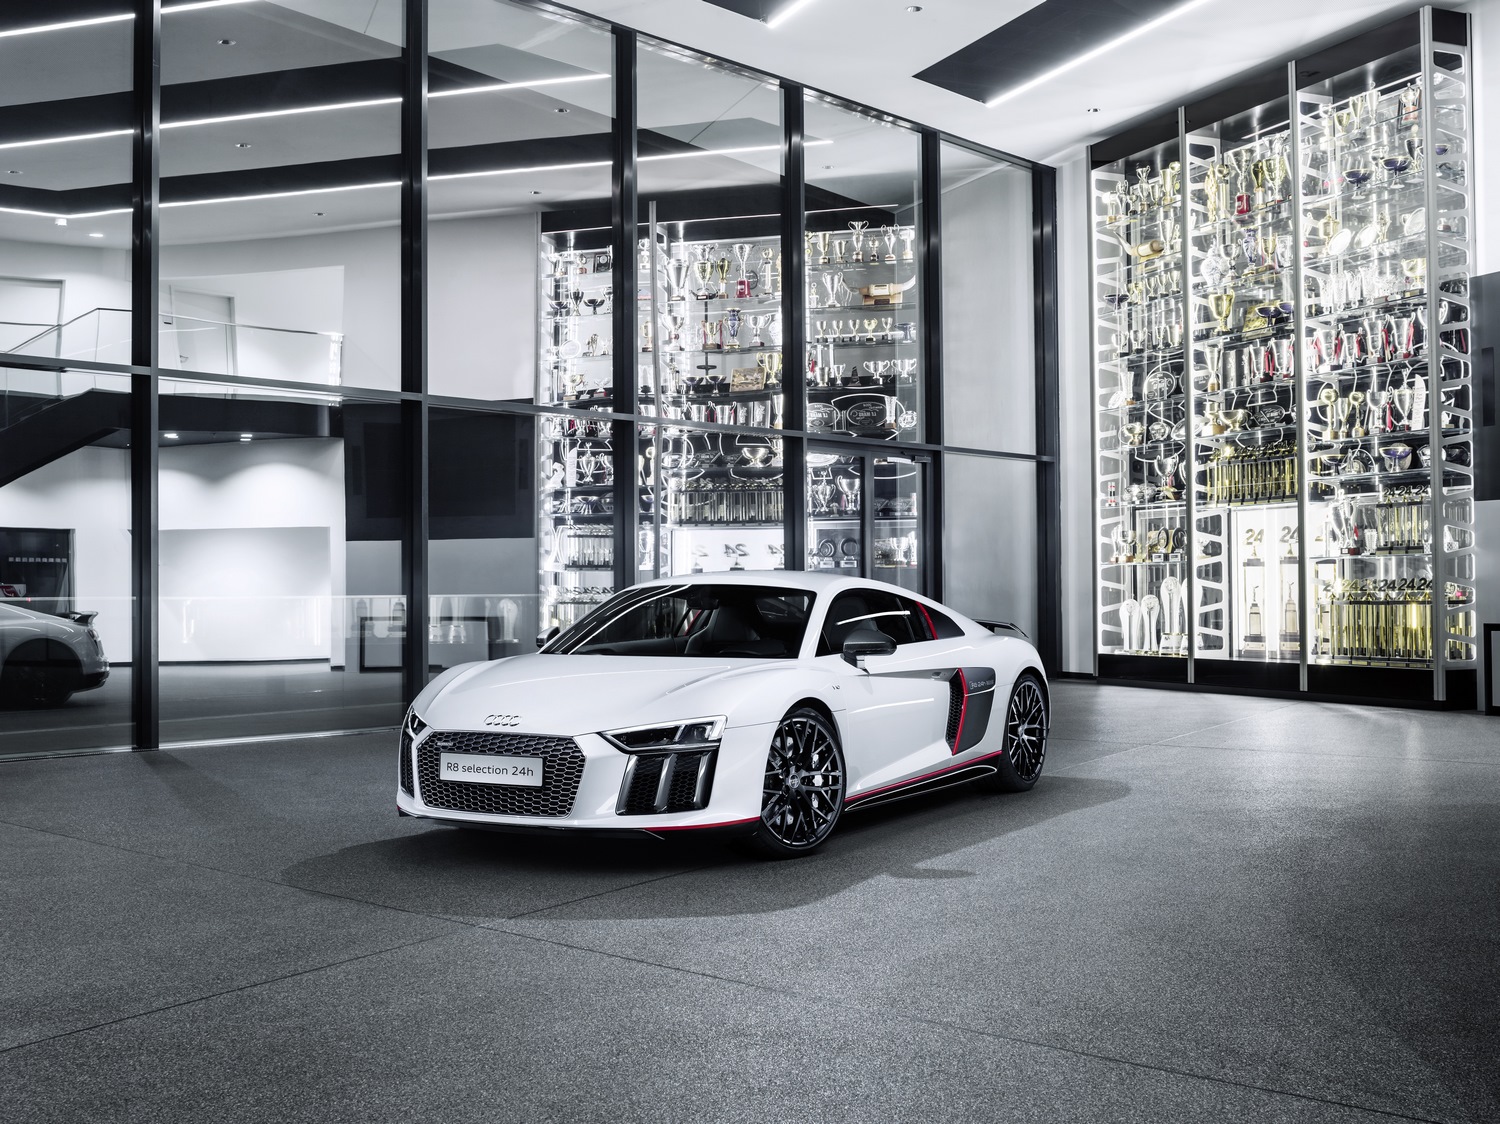 Limitowana wersja Audi R8 V10 selection 24h